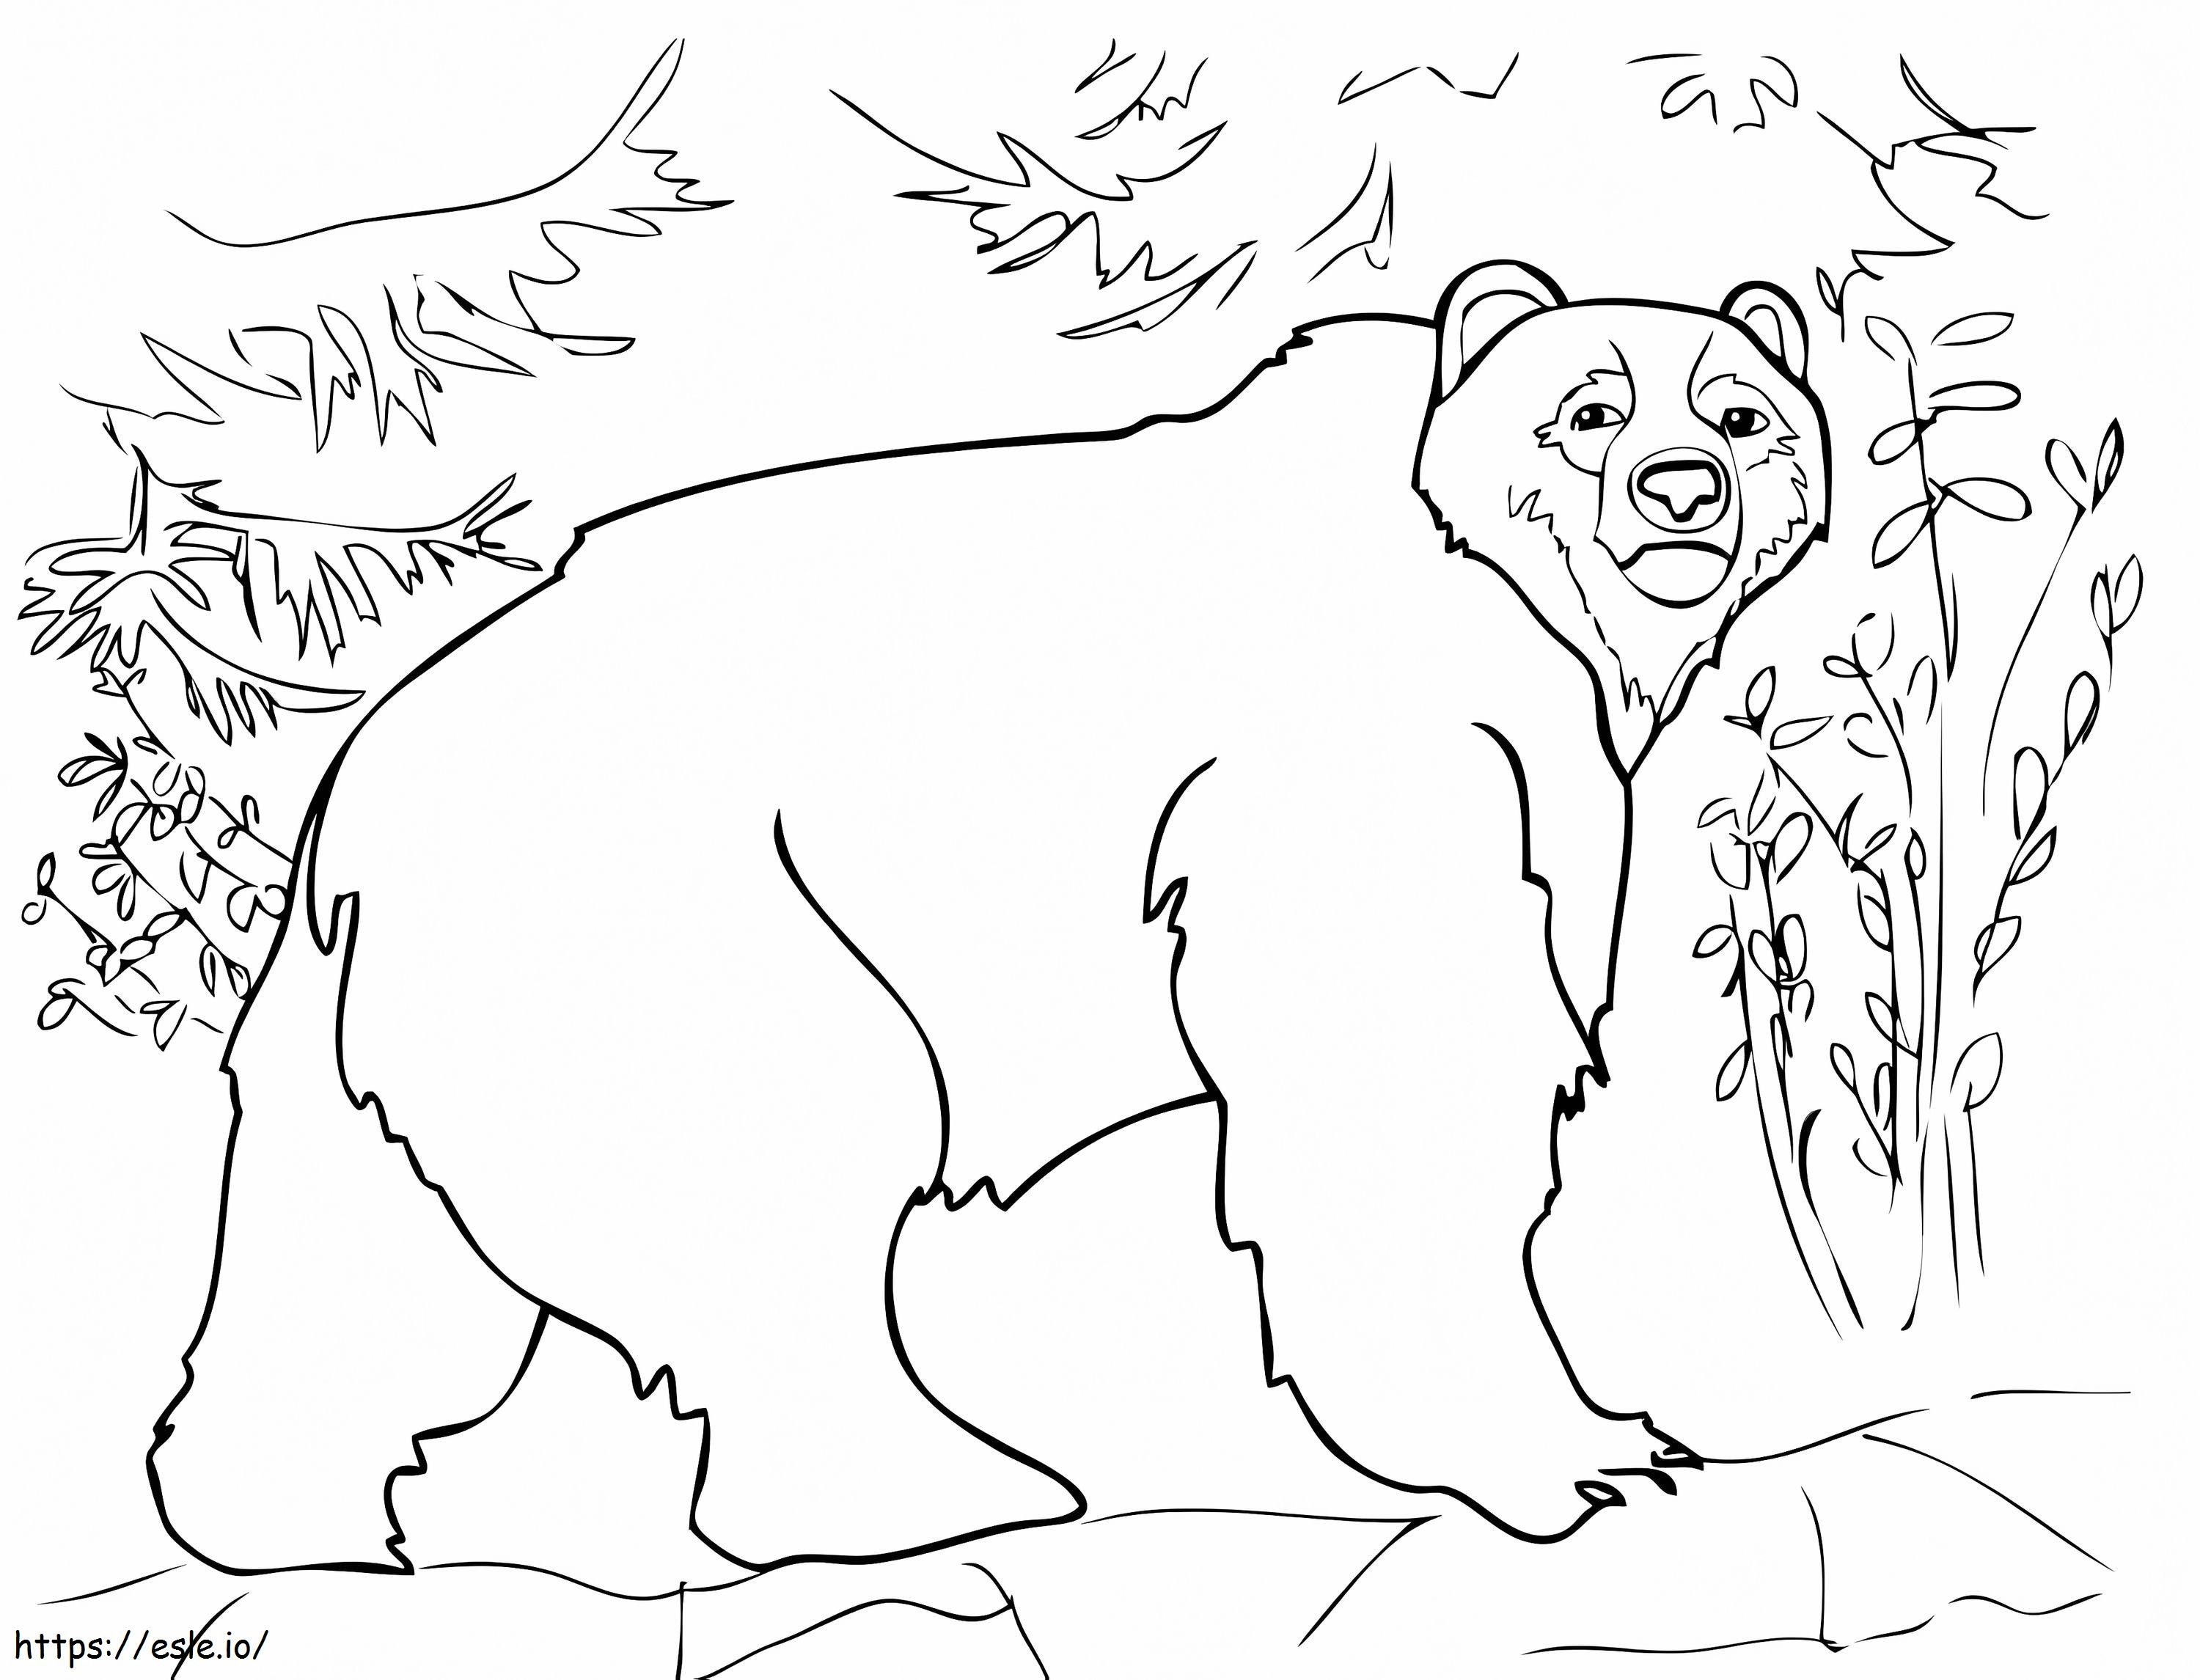 Um urso pardo para colorir